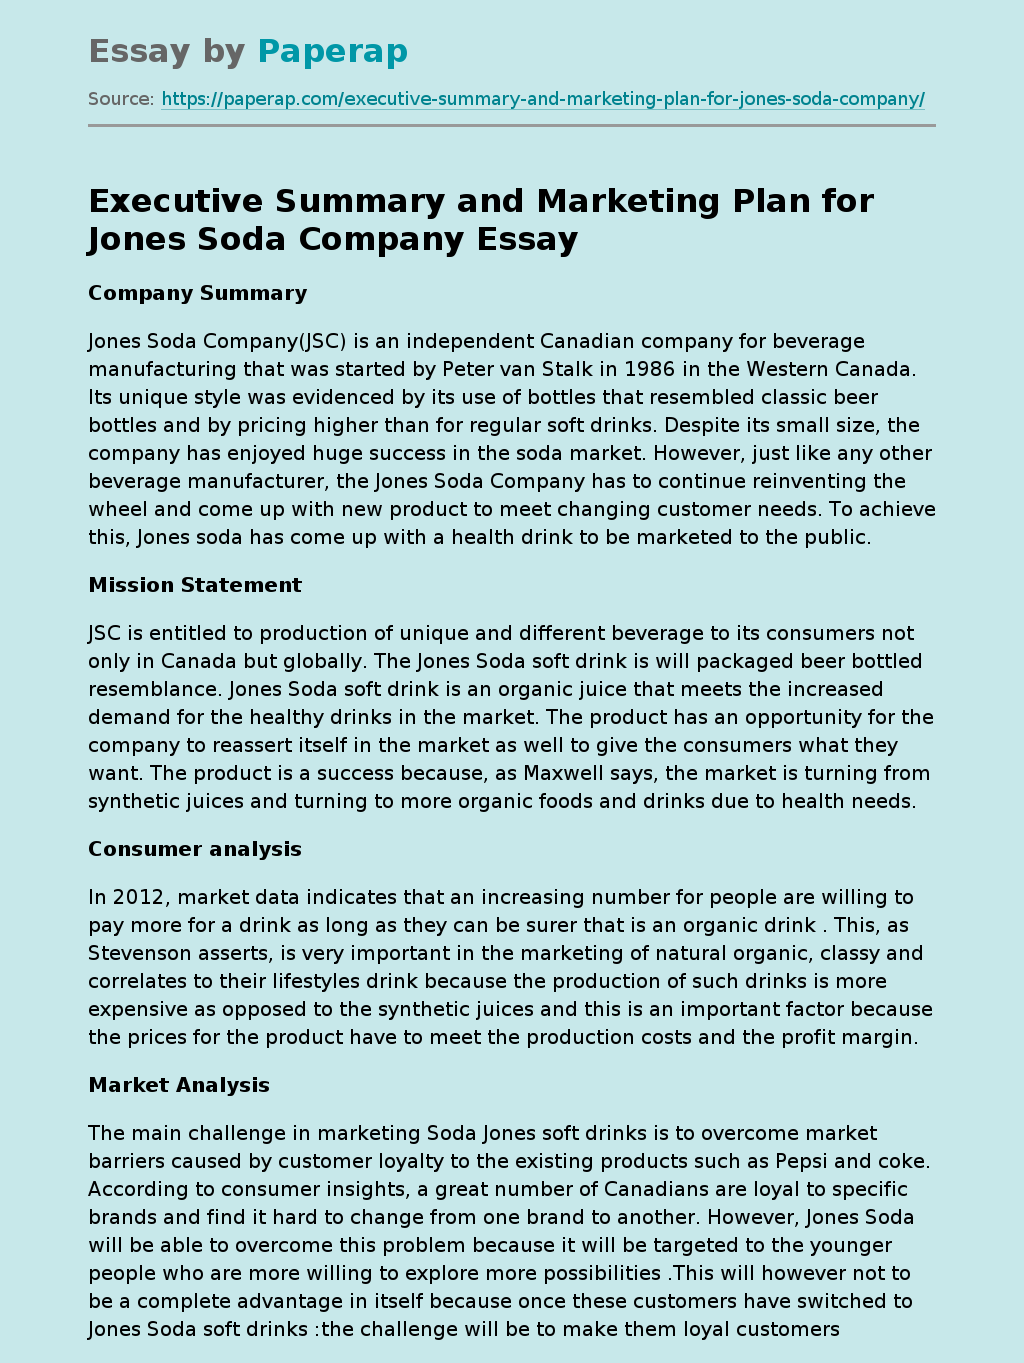 Executive Summary and Marketing Plan for Jones Soda Company